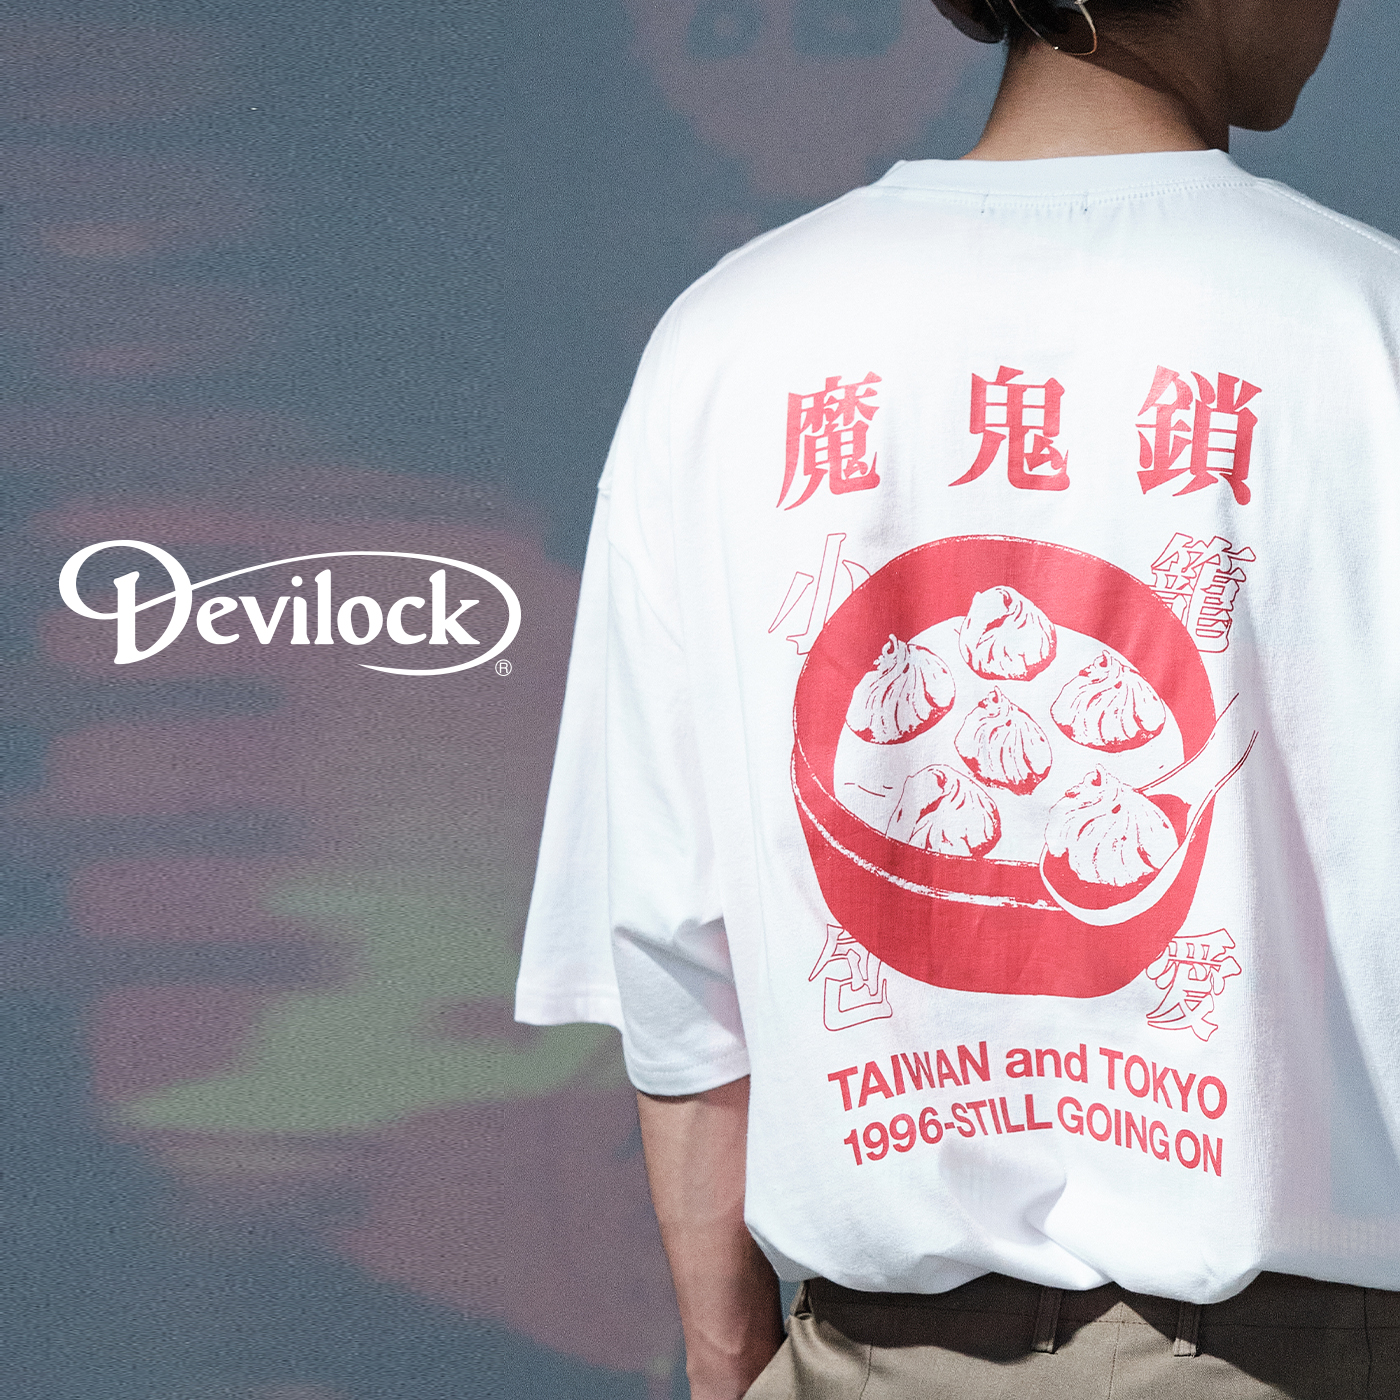 魔鬼鎖,devilock,devilock t shirt,裏原宿,遠藤憲昭,遠藤さん